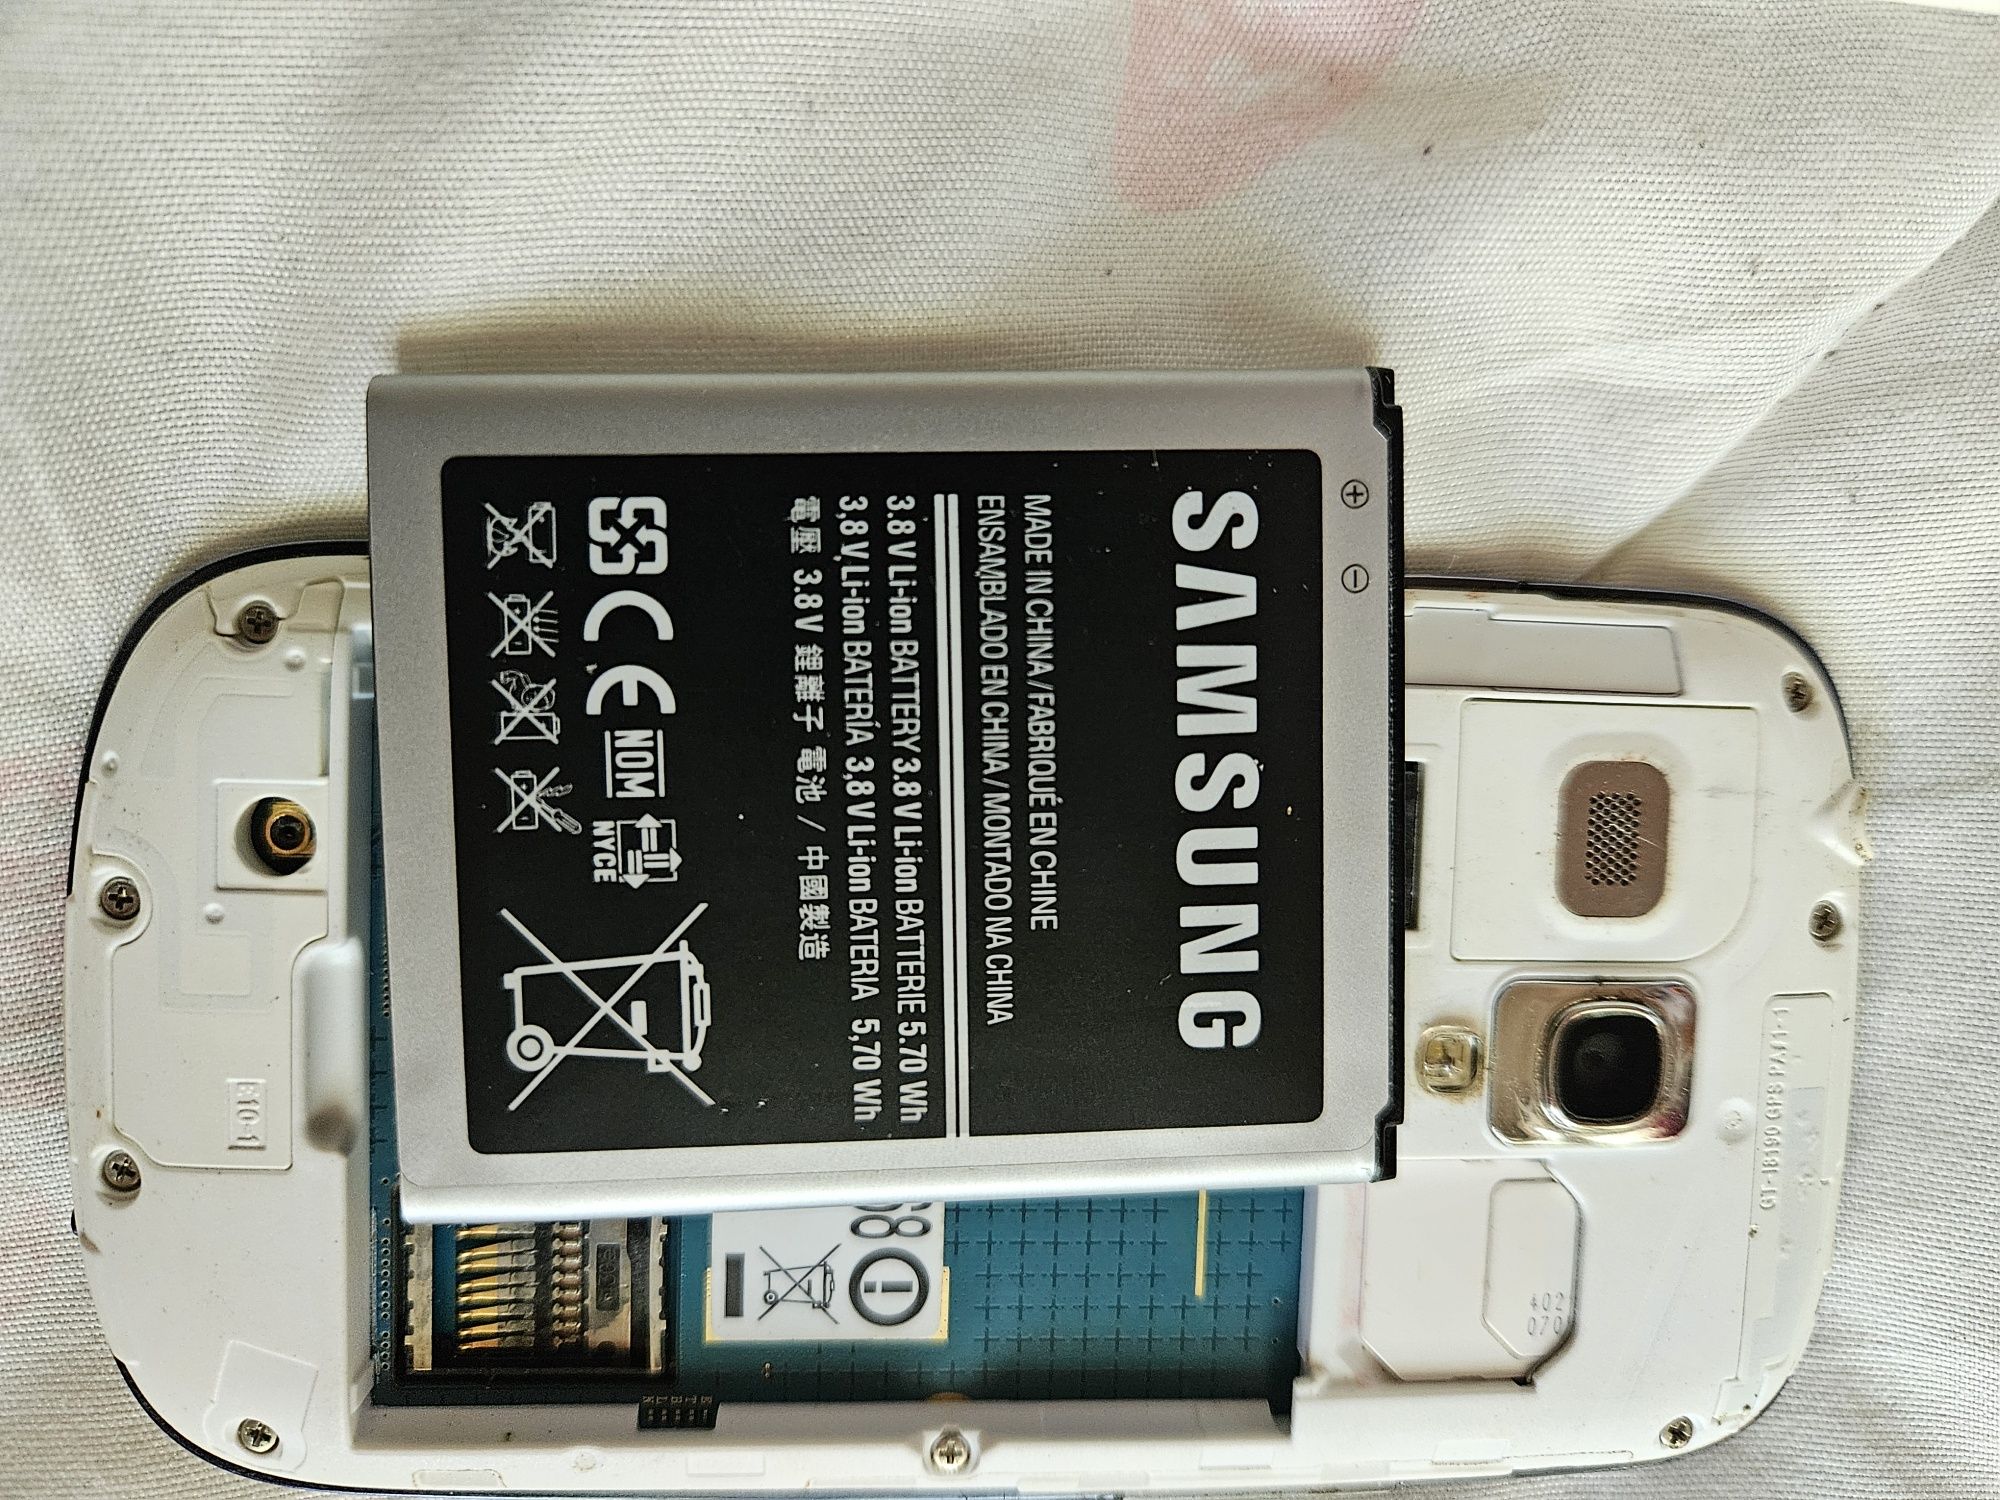 Samsung Galaxy S3.